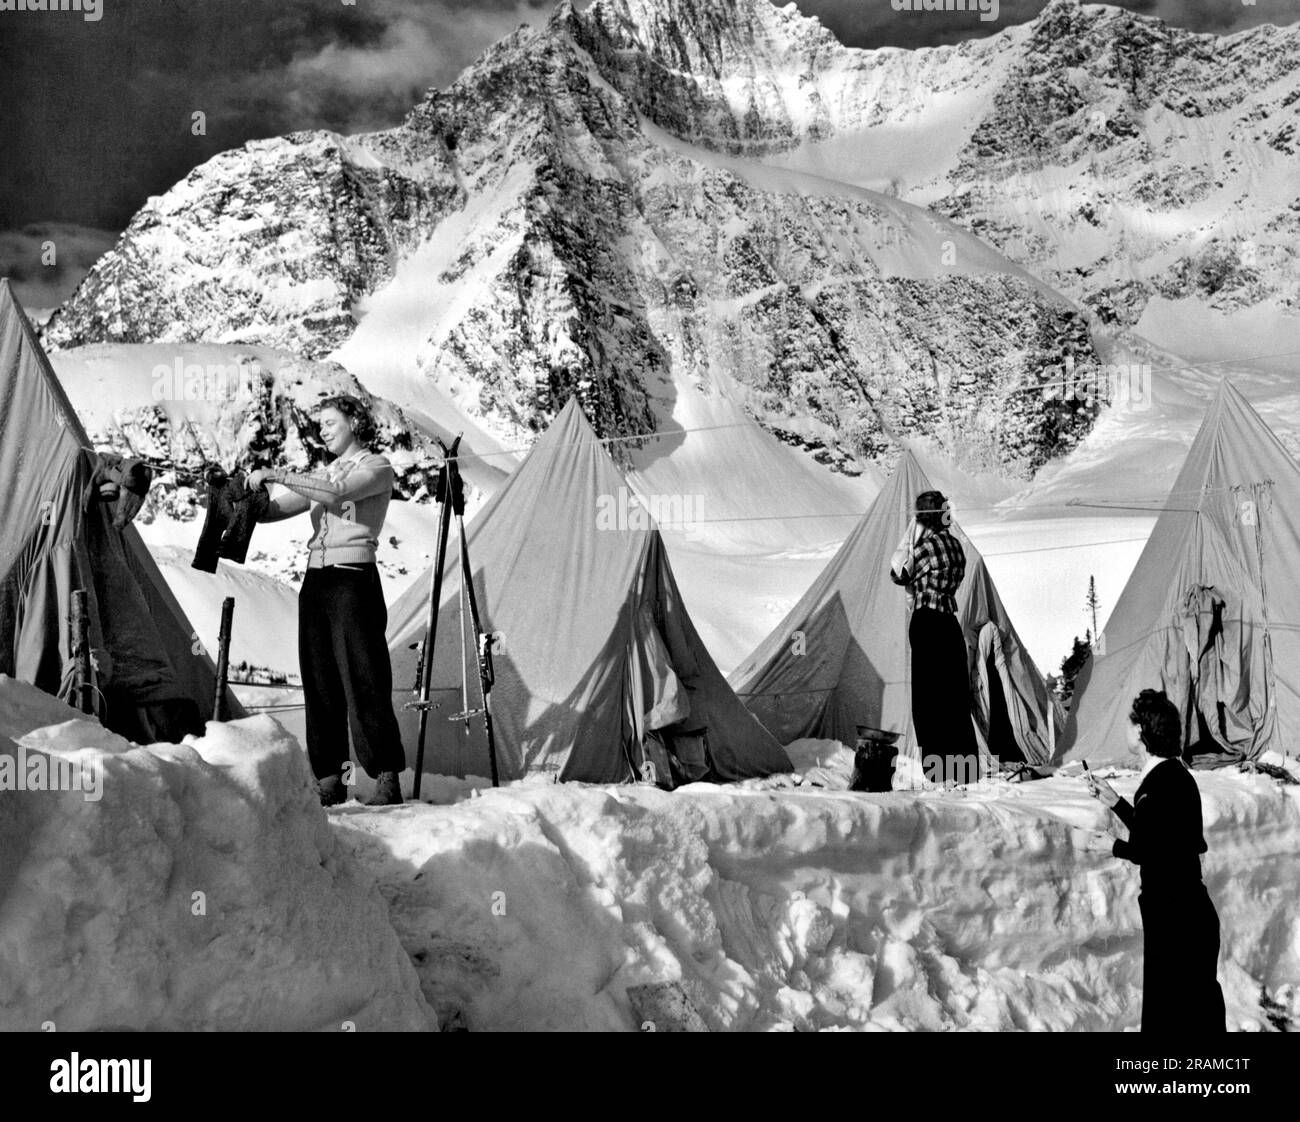 Parc national Jasper, Alberta, Canada : c. 1960 les femmes à leur camp de ski dans la neige au-dessus de timberline, dans la vallée de l'Eremite, dans les Rocheuses canadiennes. Banque D'Images